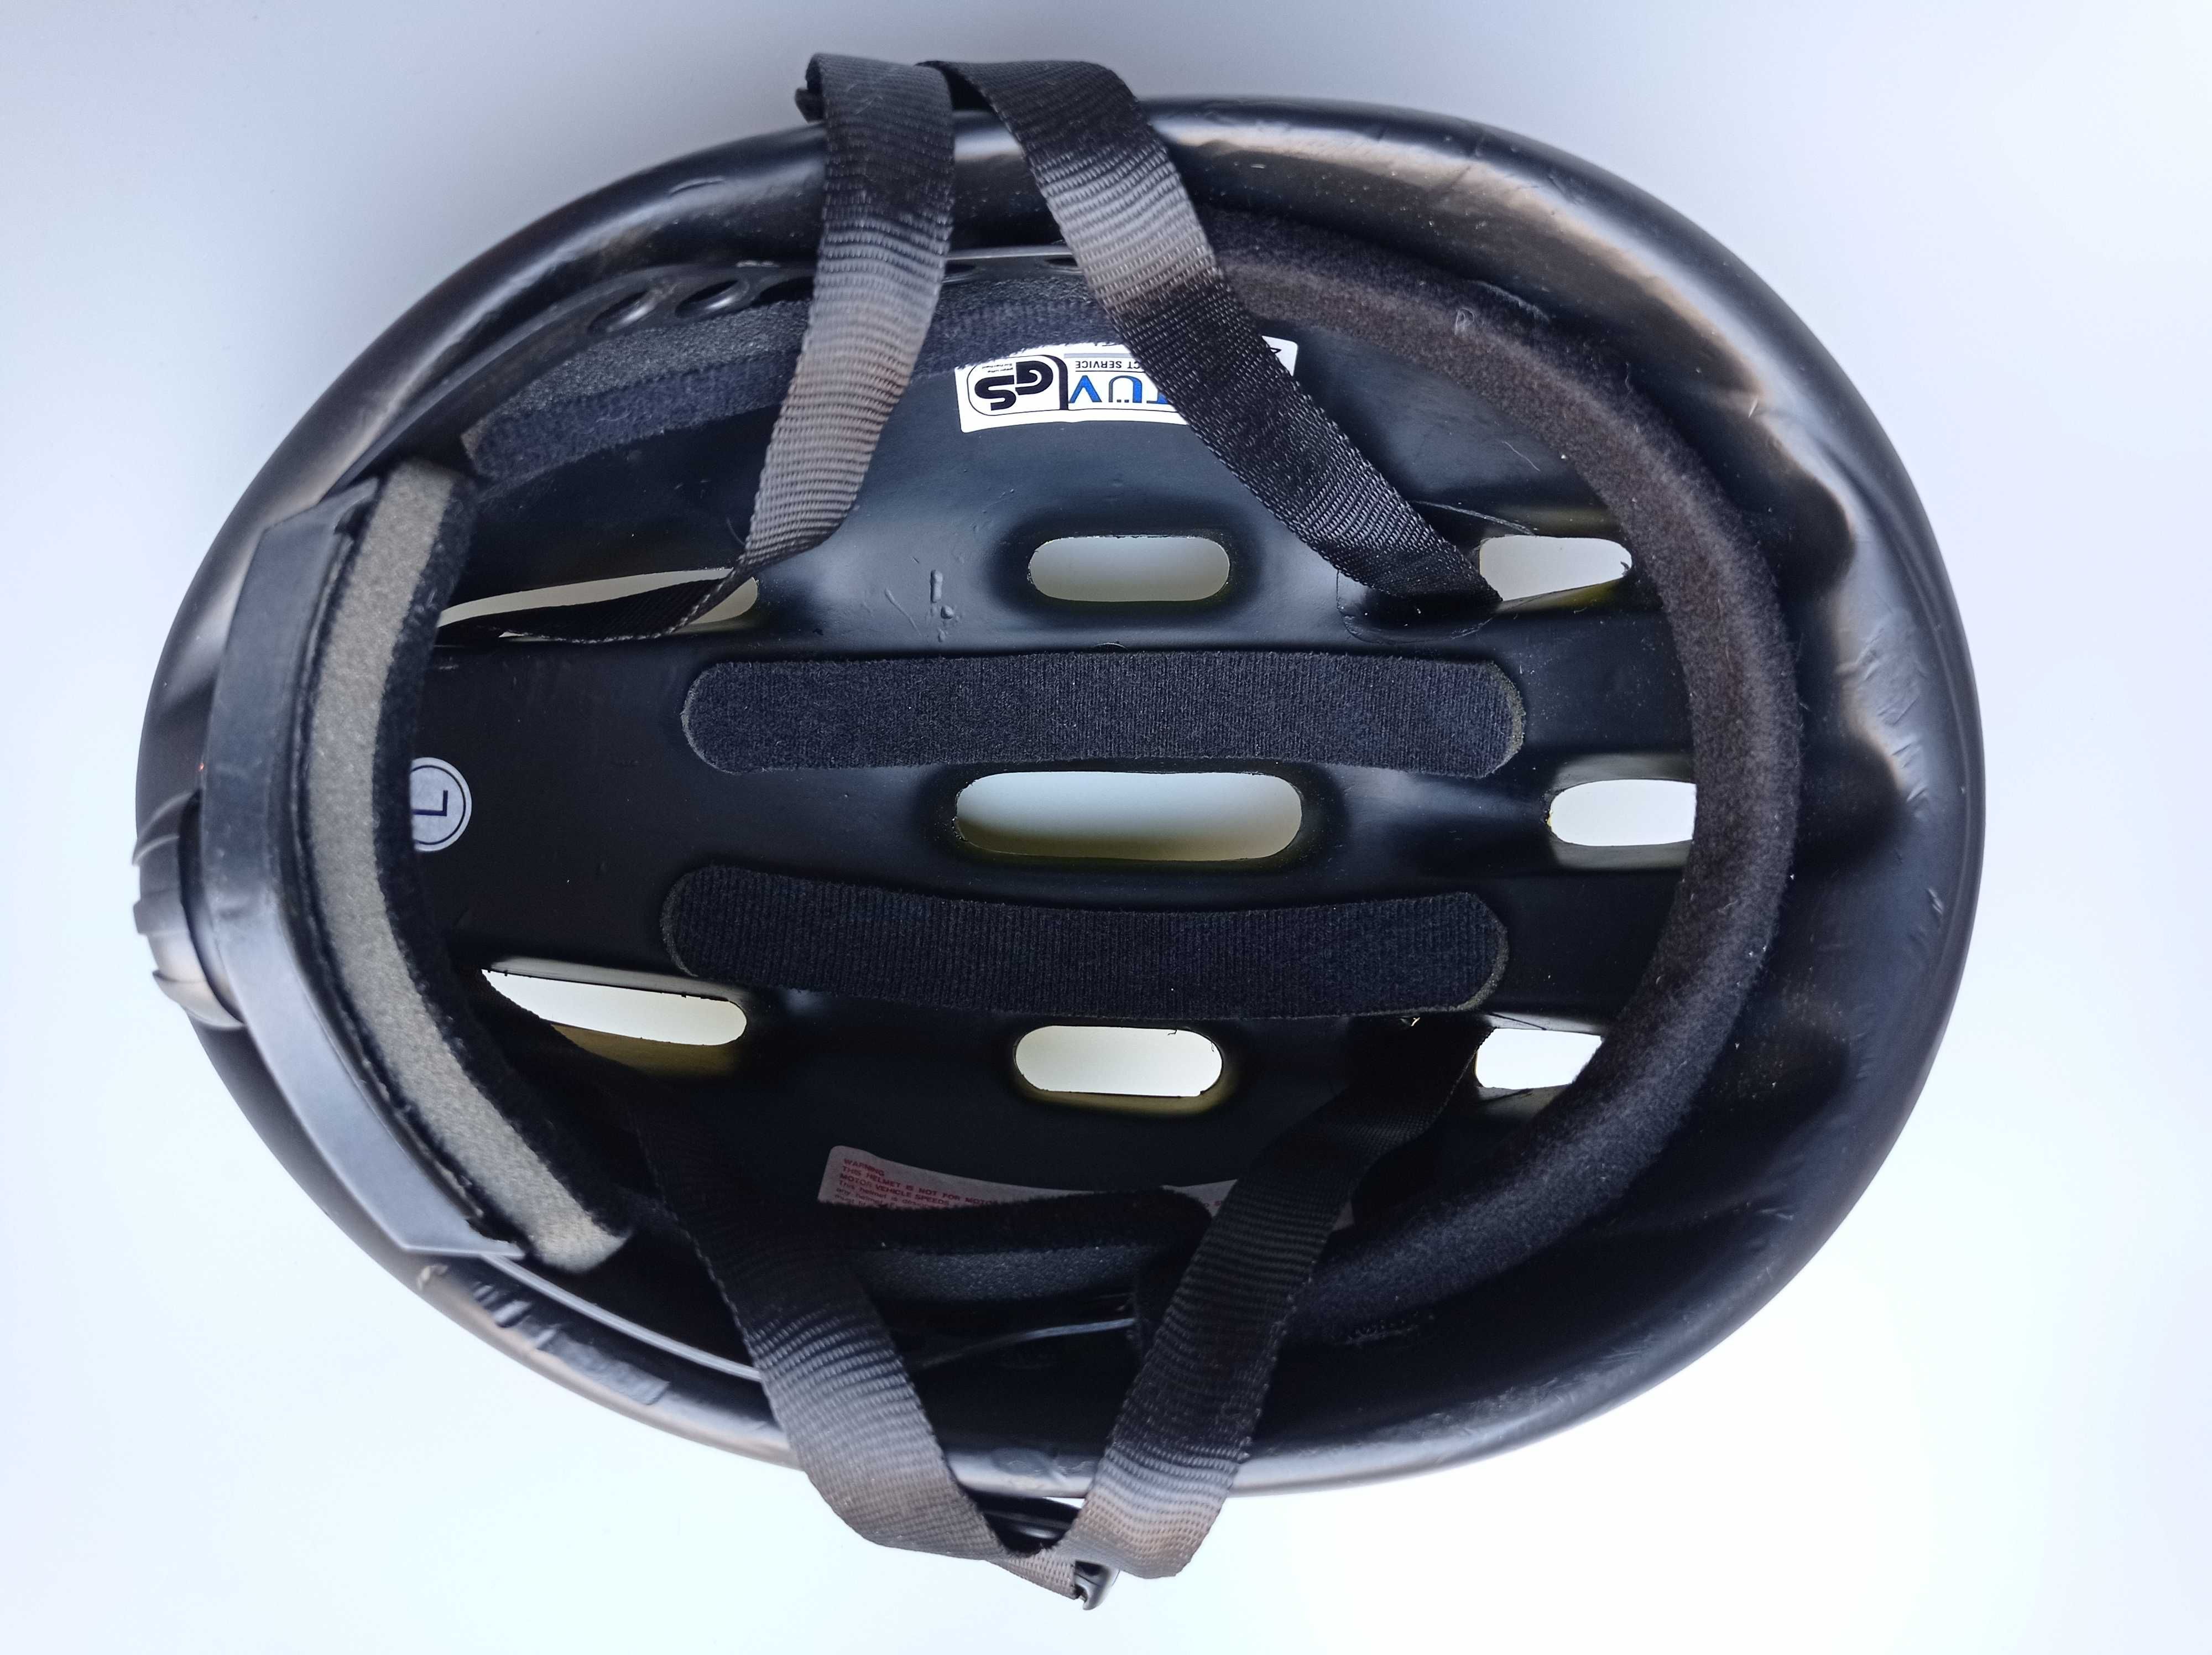 Шлем защитный Teveten Vivid, размер 55-59см, велосипедный.